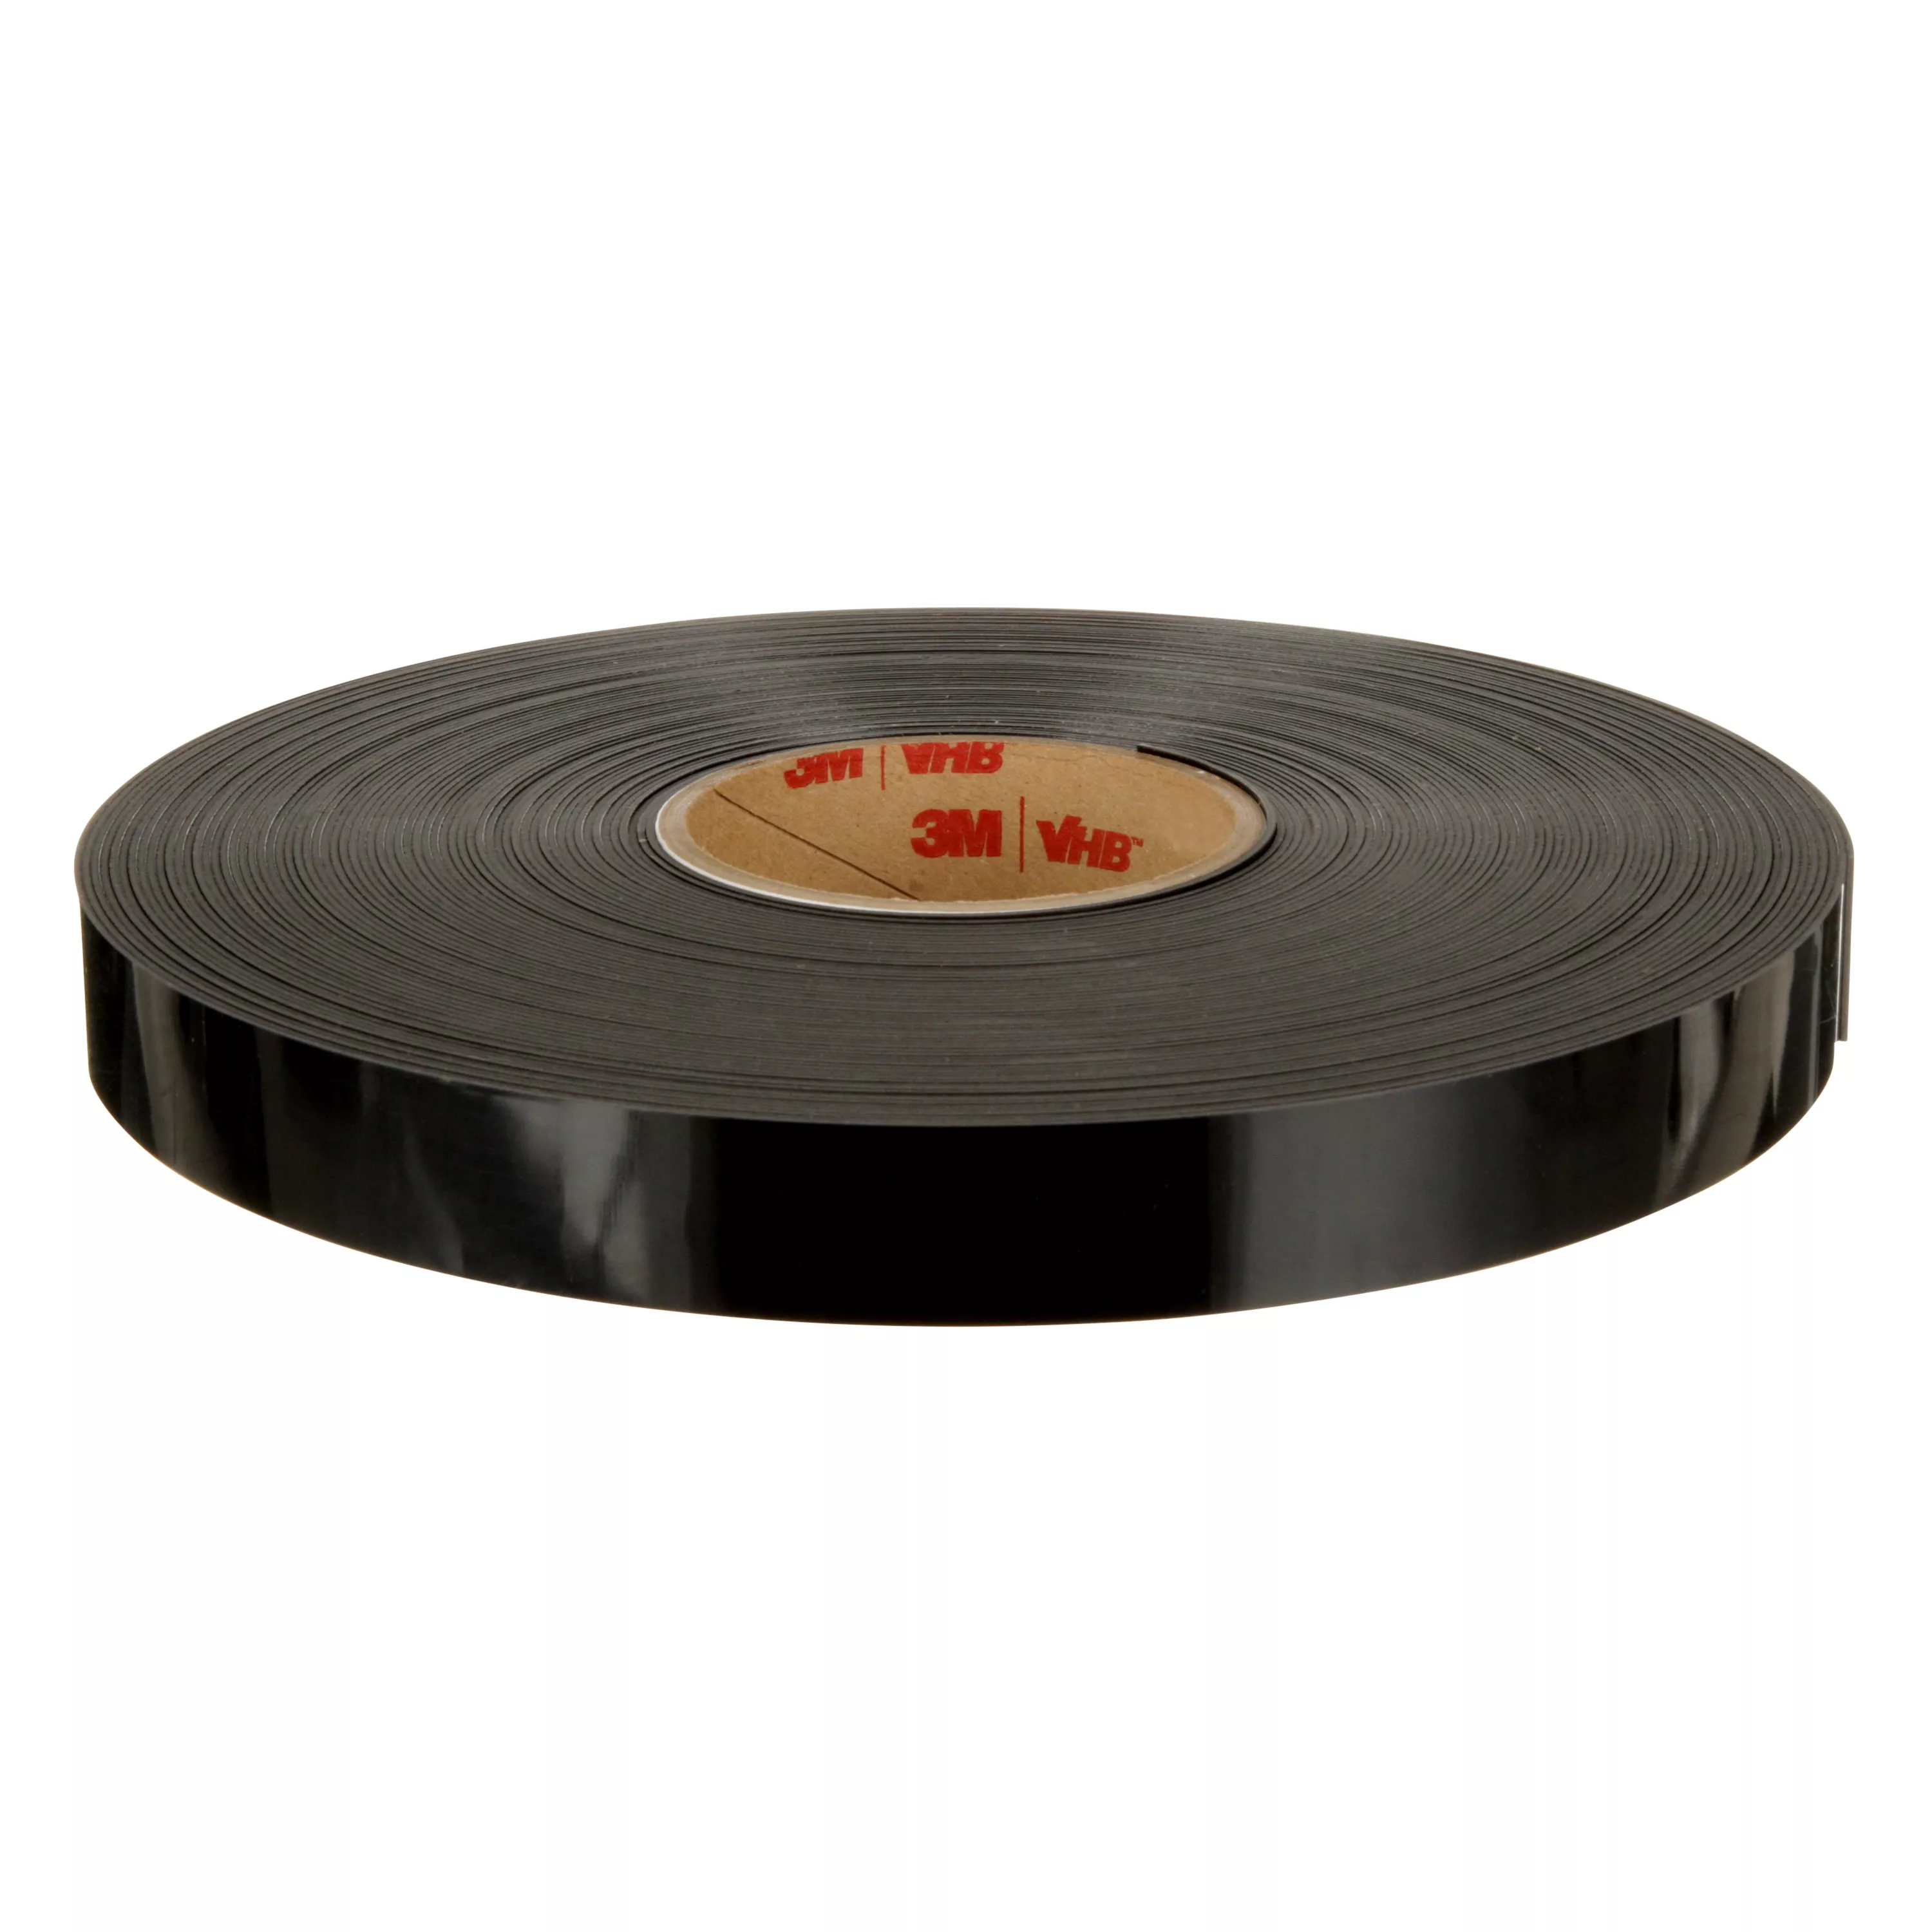 3M™ VHB™ Tape 4949, Black, 1/2 in x 36 yd, 45 mil, 18 rolls per case